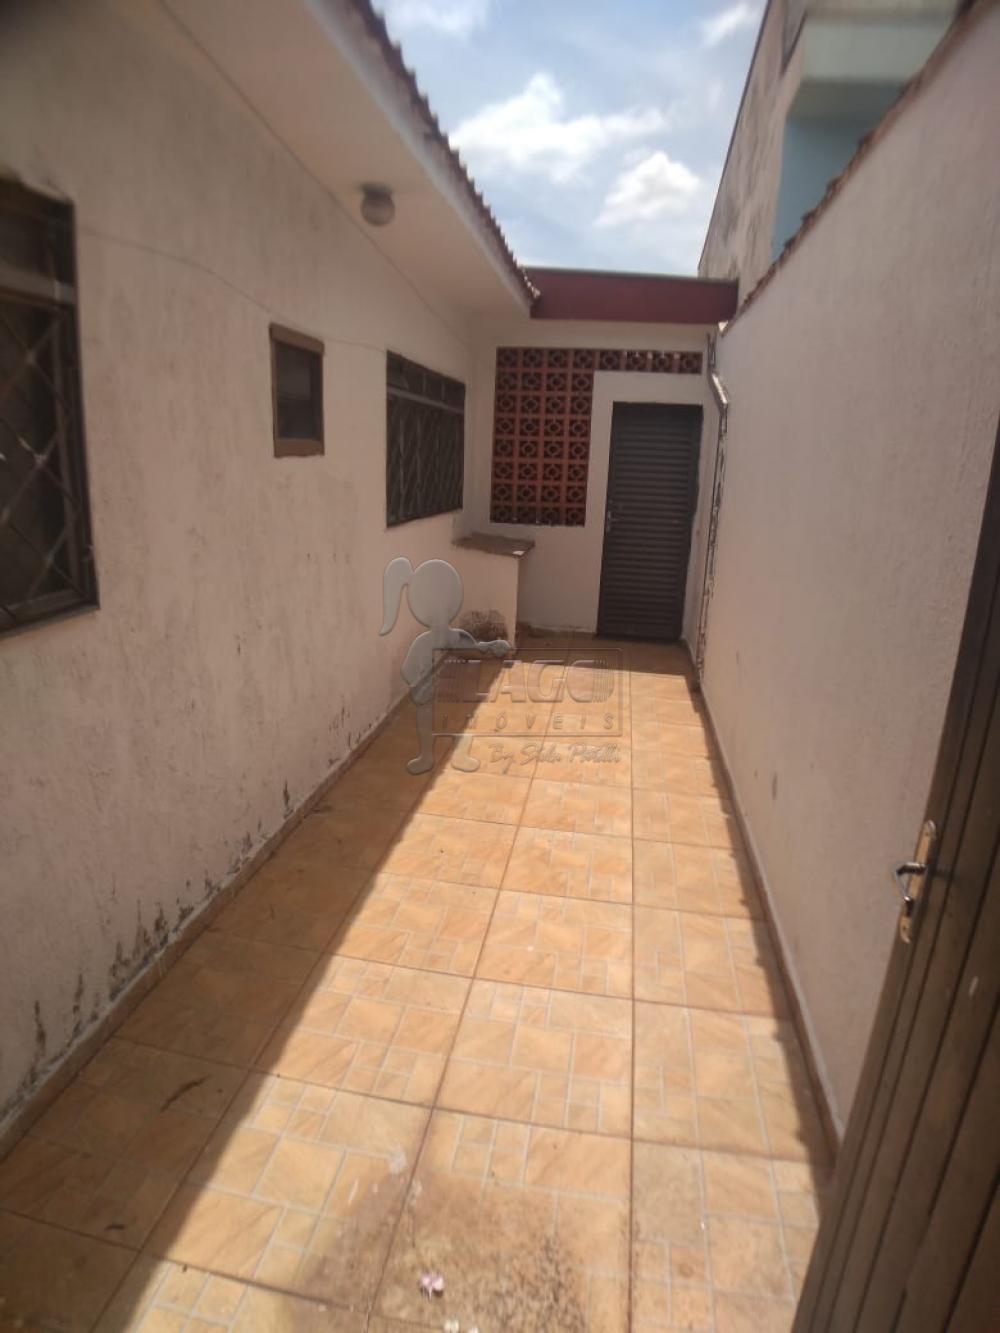 Alugar Casas / Padrão em Ribeirão Preto R$ 700,00 - Foto 11